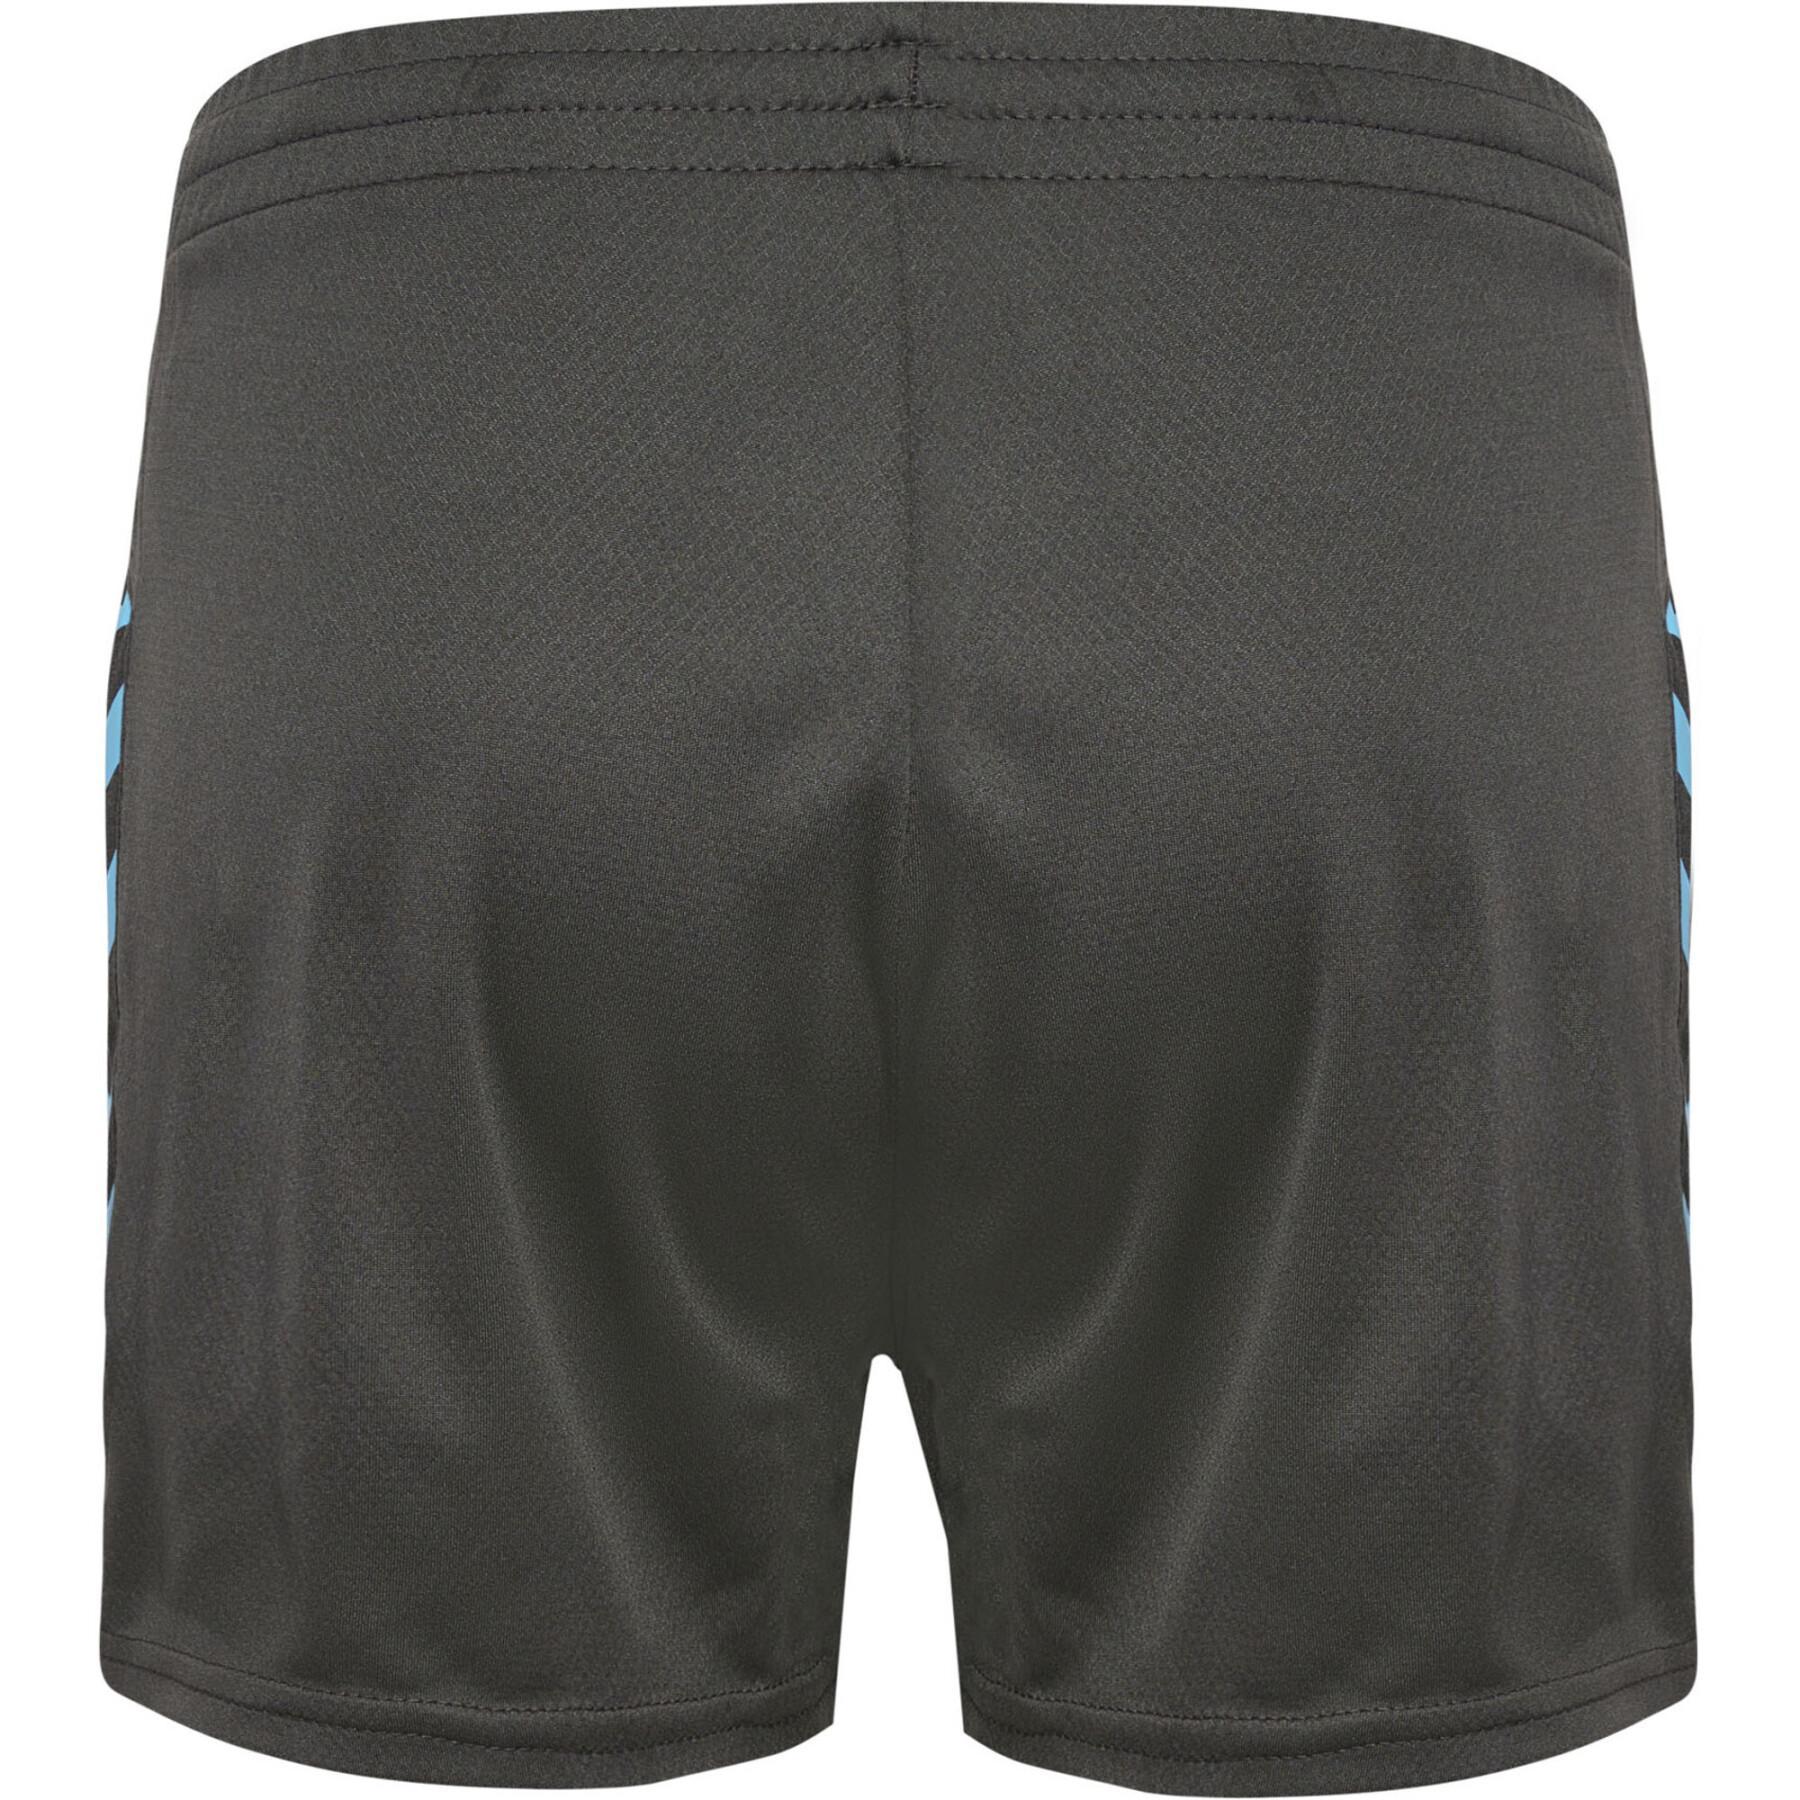 Women's shorts Hummel HmlStaltic